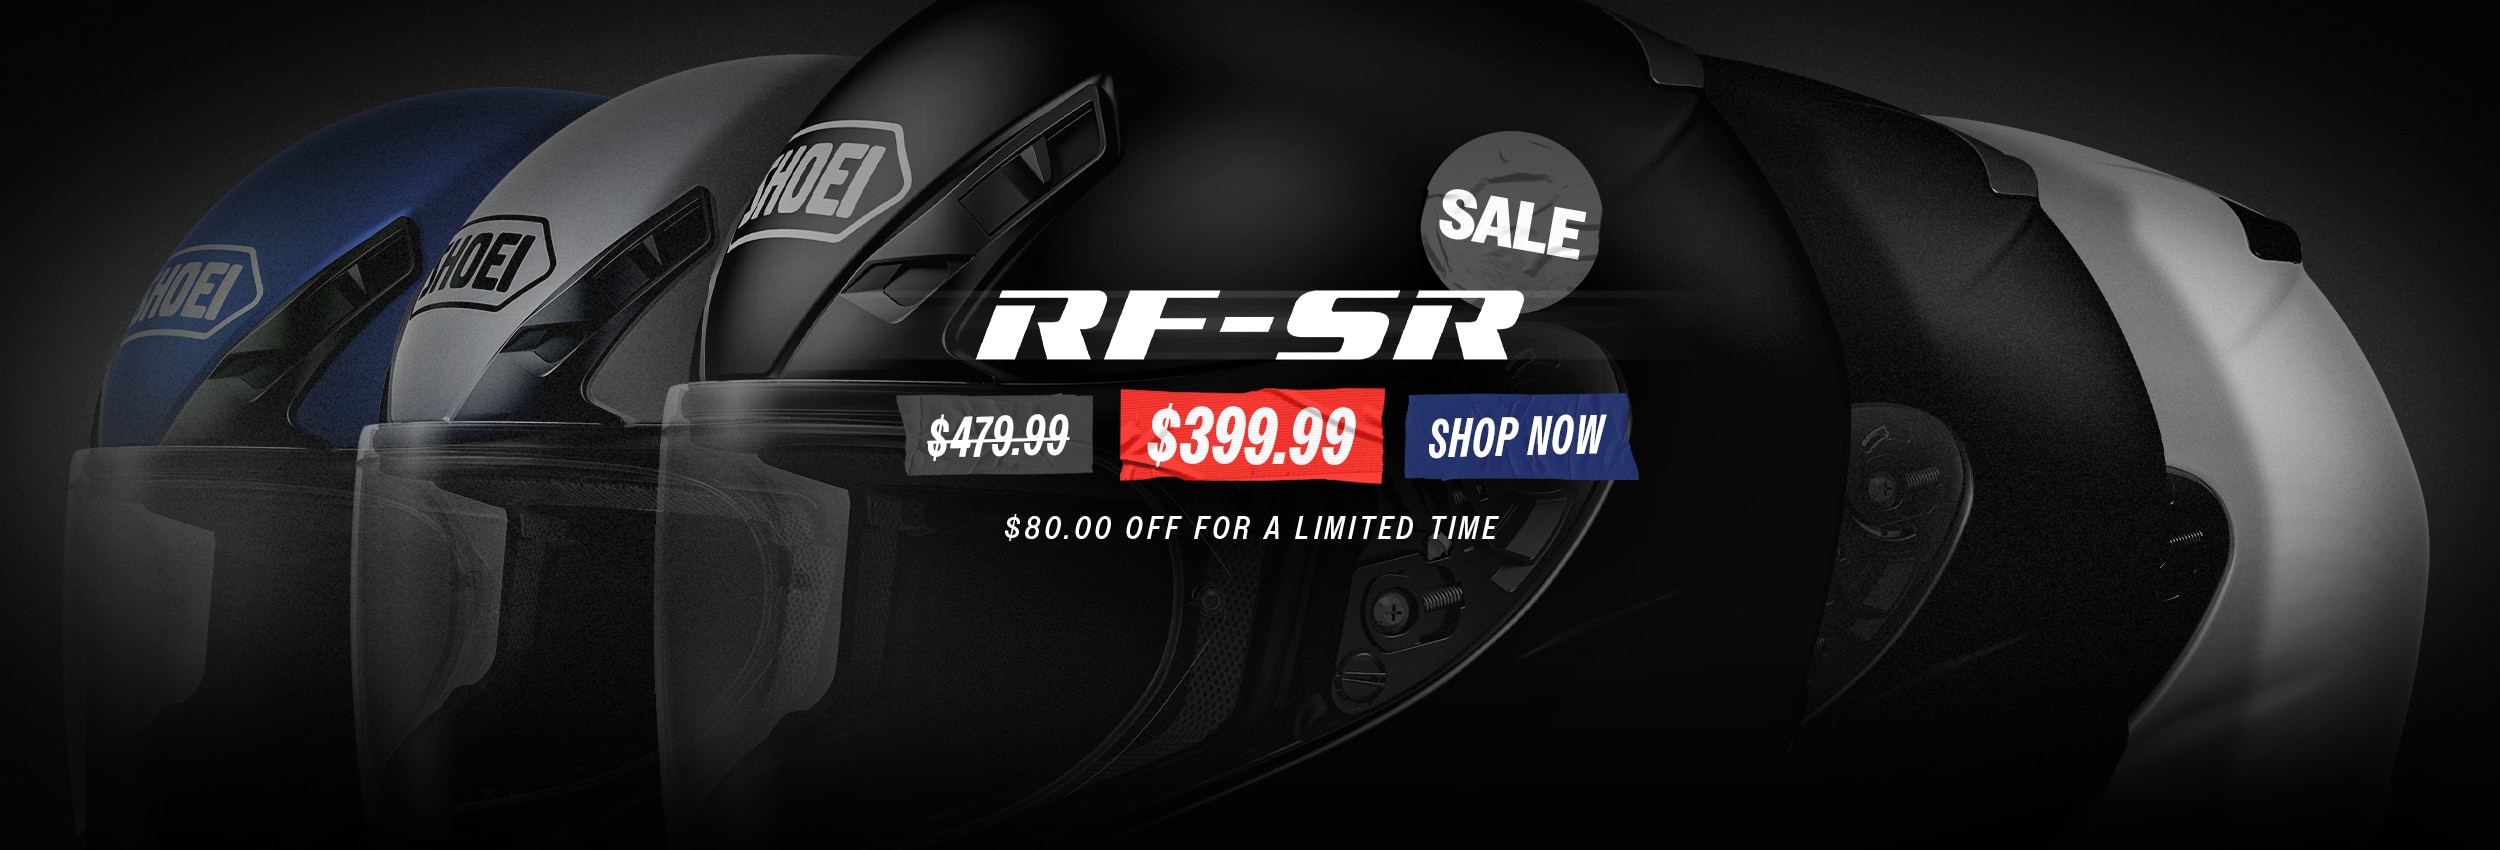 SHOEI RF-SR on sale for $399.99